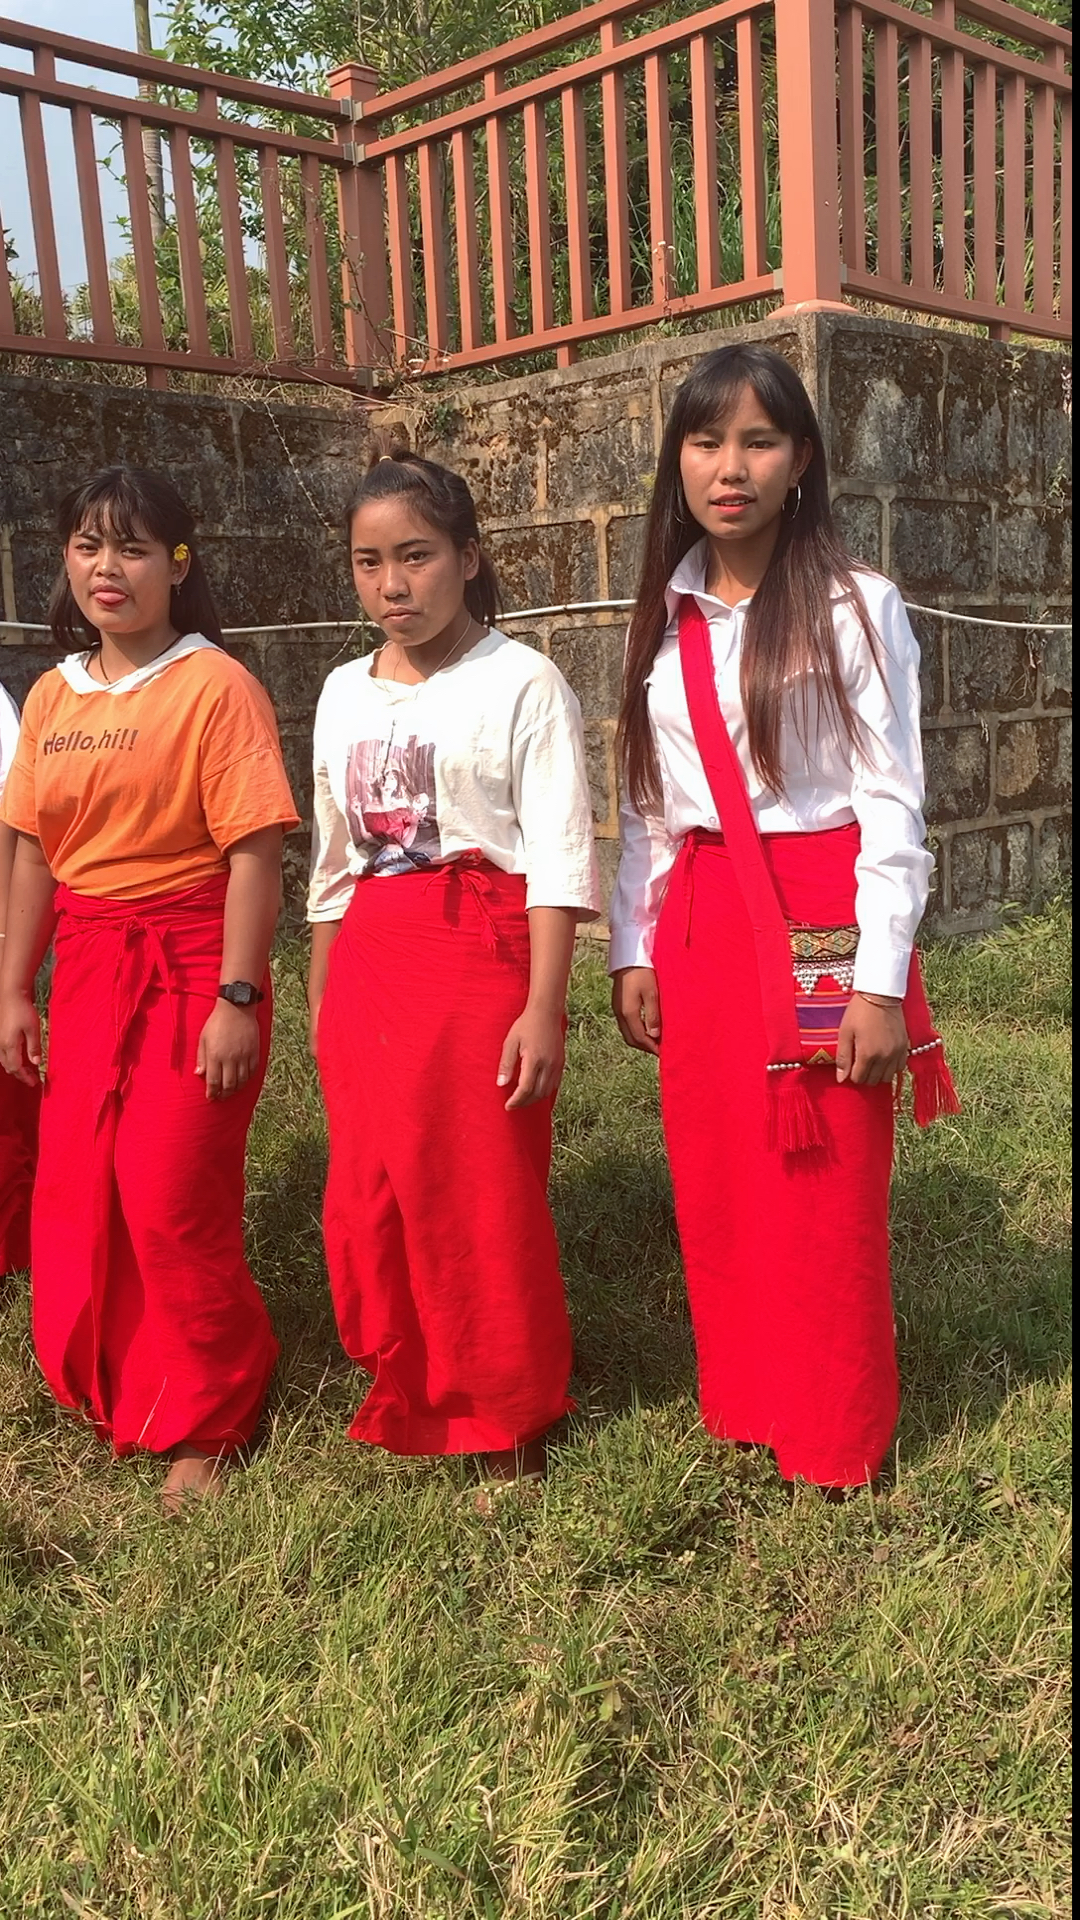 缅甸女孩娶不得图片